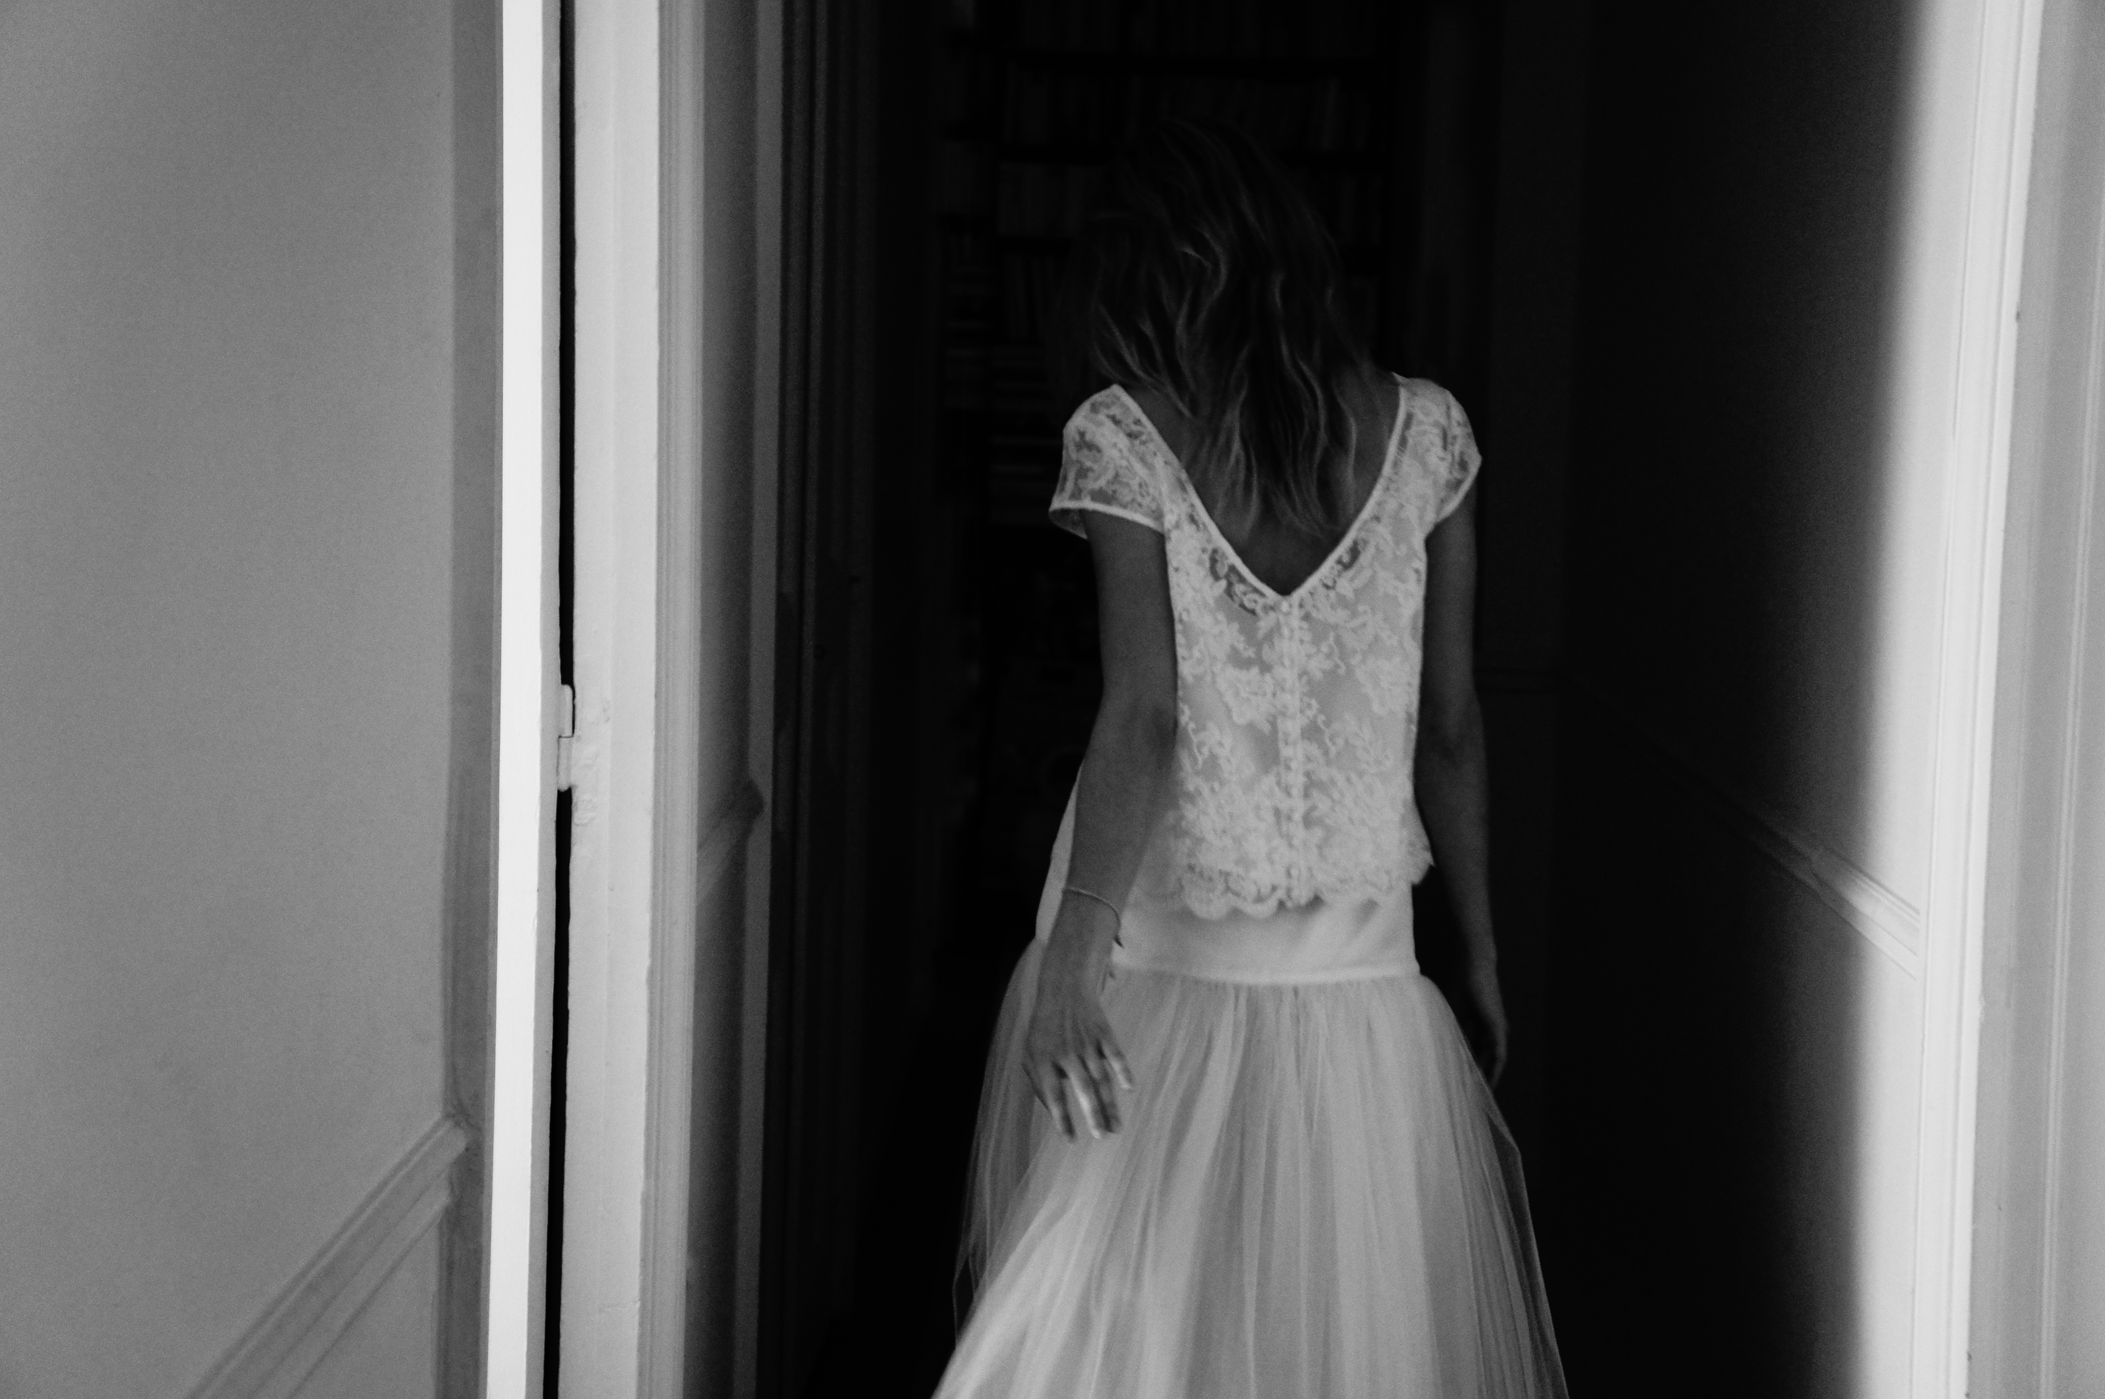 Mariage: coup de coeur pour les robes Elise Hameau